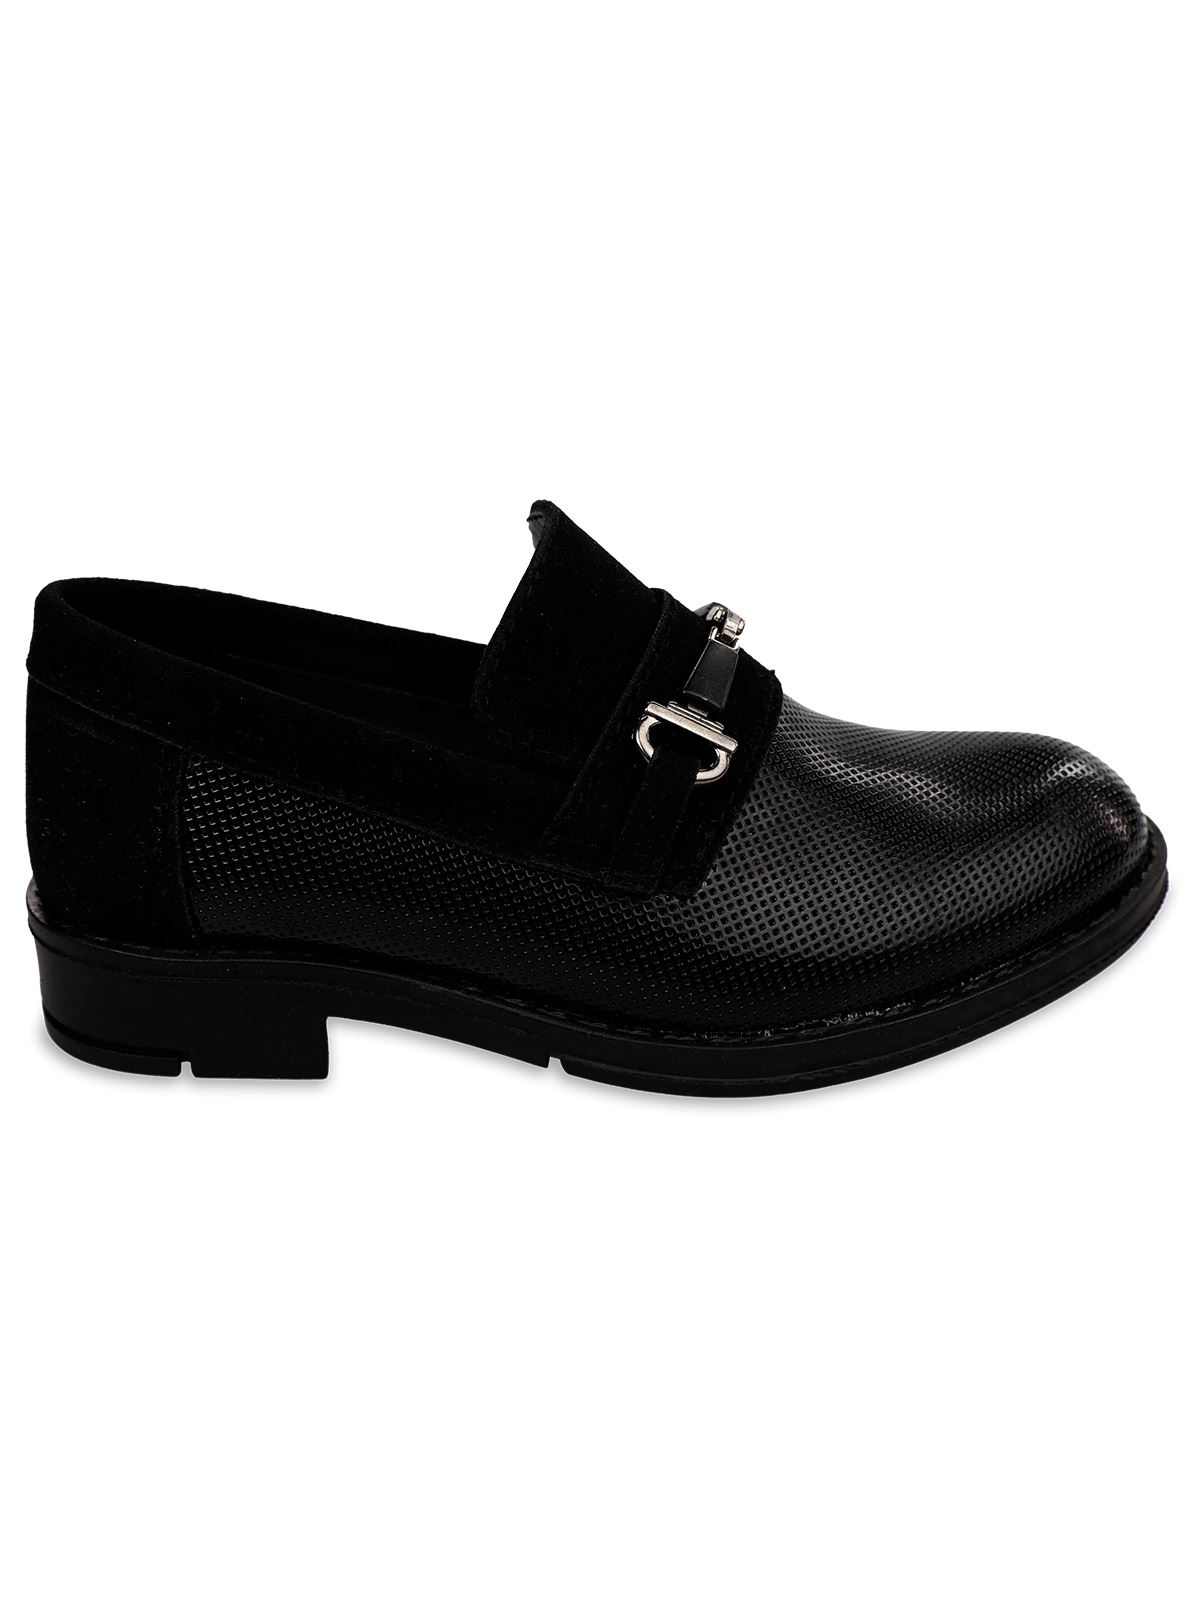 Harli Erkek Çocuk Kemer Detaylı Klasik Ayakkabı 26-30 Numara Siyah